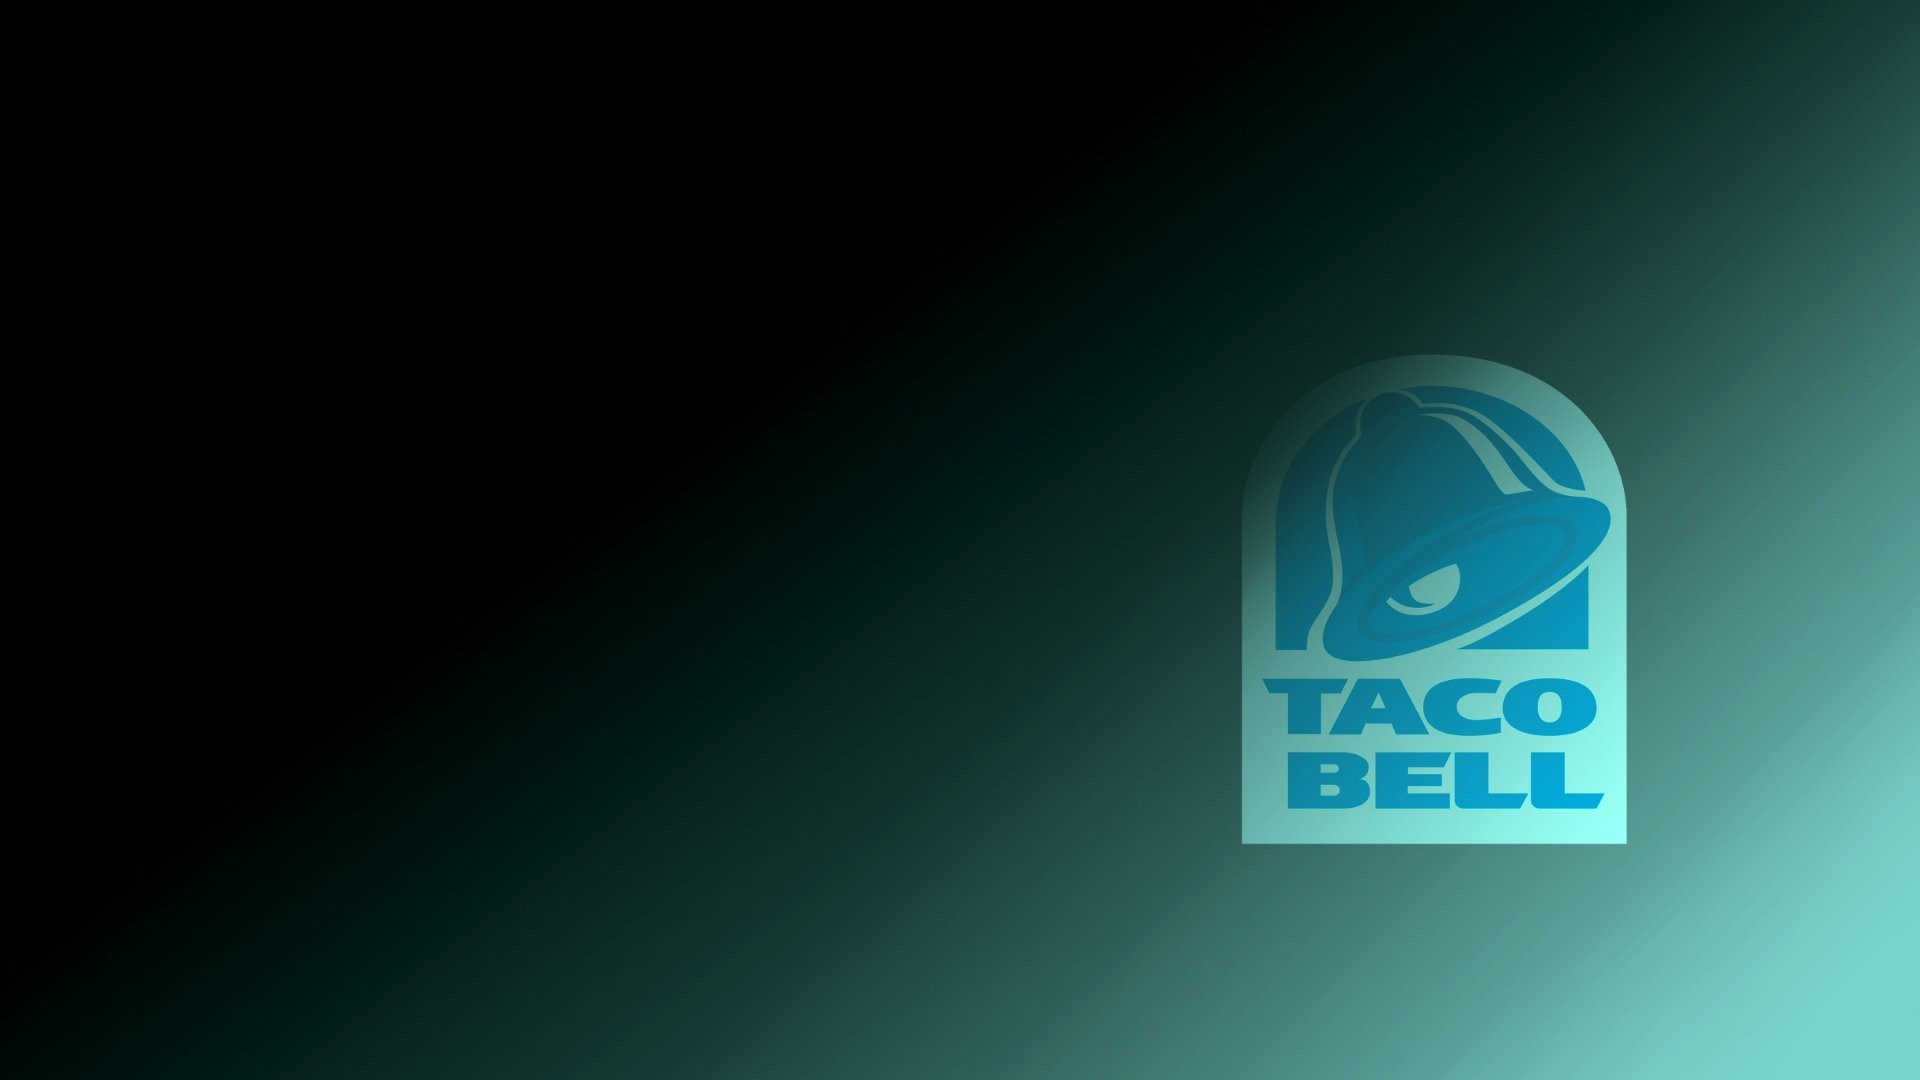 taco bell wallpaper,blue,text,aqua,green,font